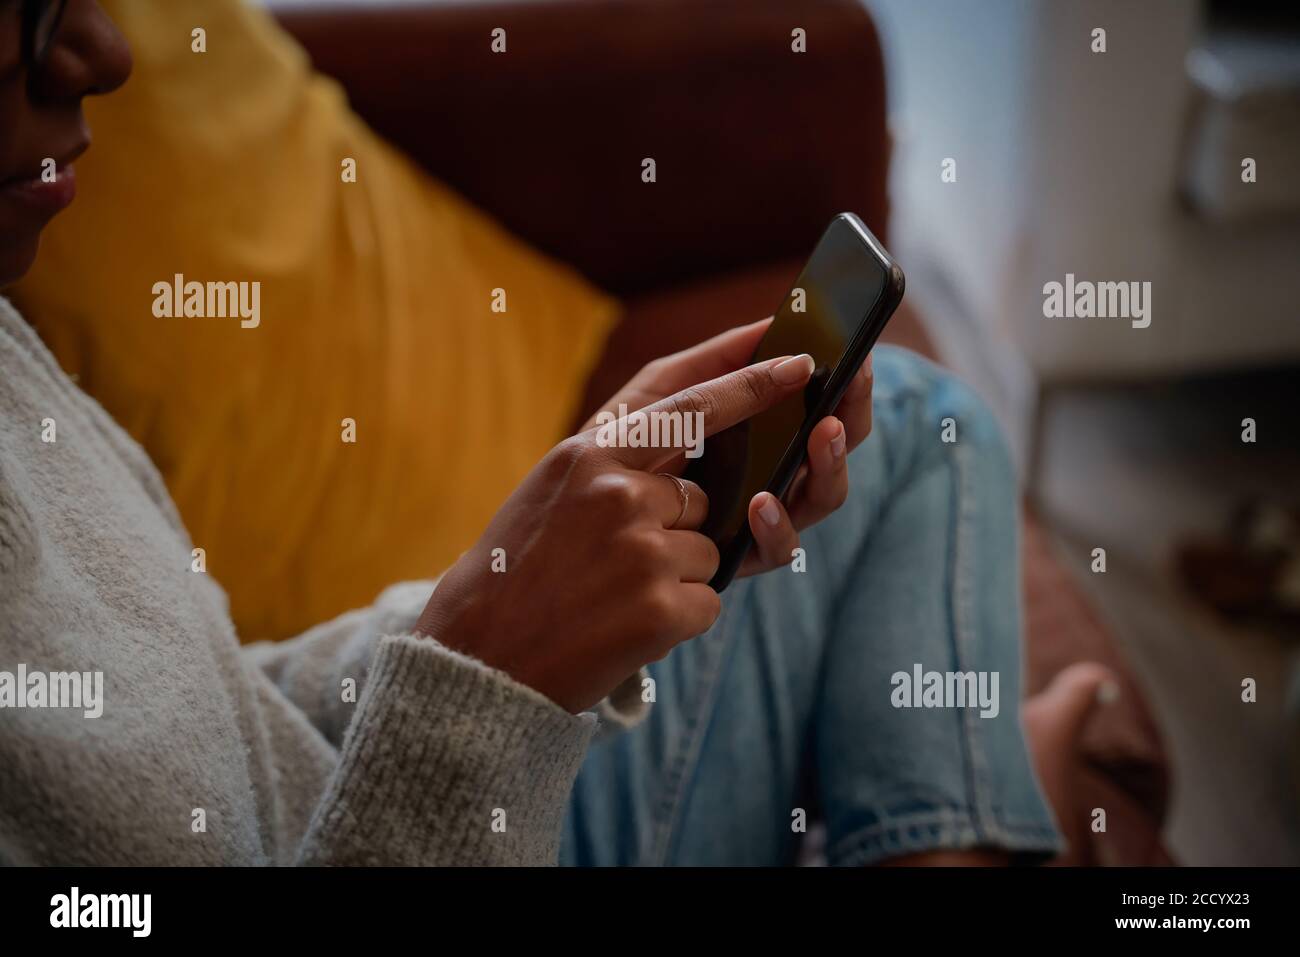 Gros plan de la main de la jeune femme touchant l'écran du téléphone portable assis sur un canapé Banque D'Images